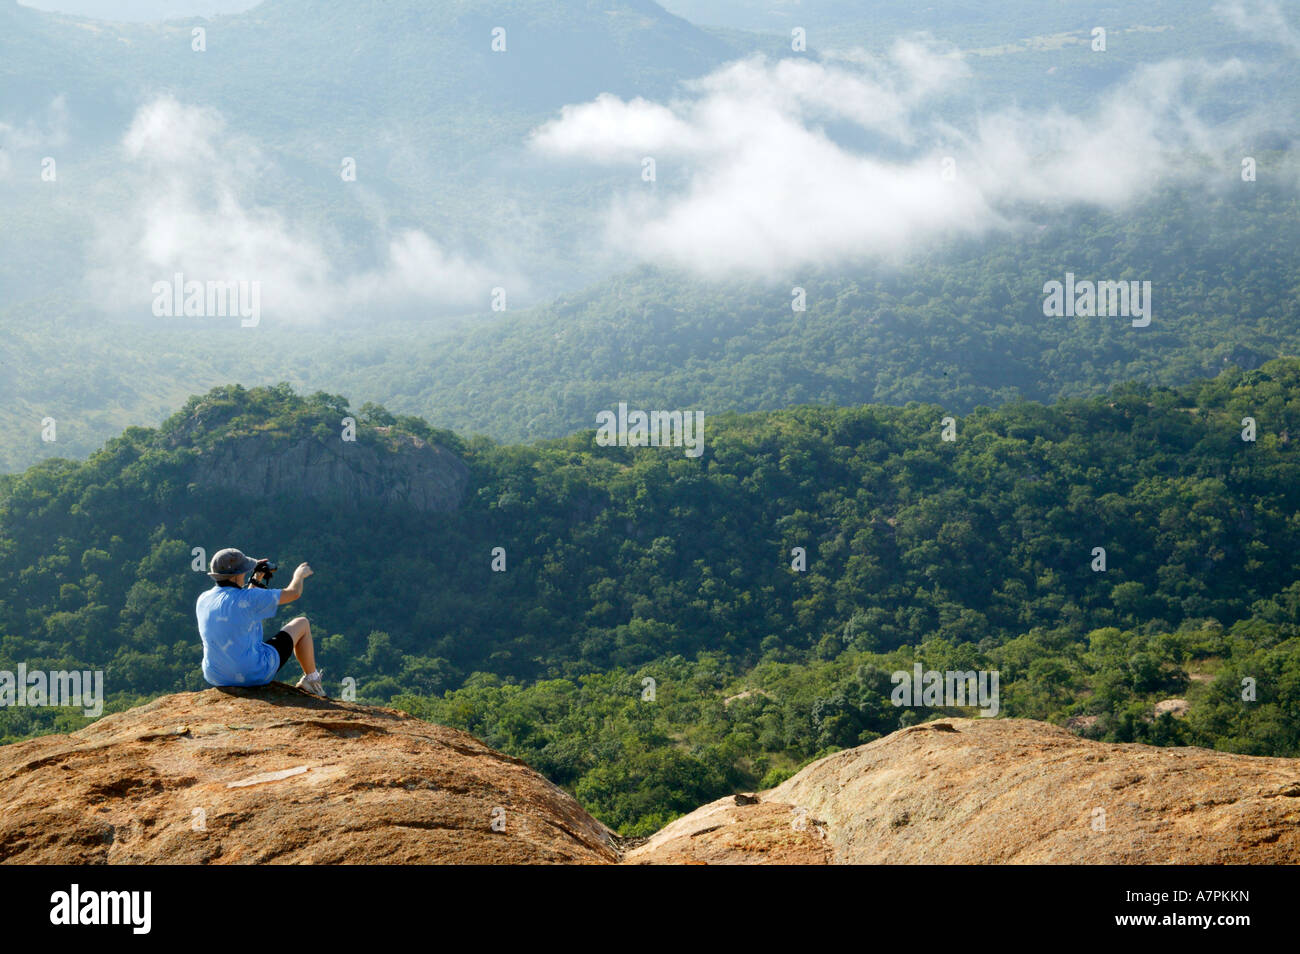 Eine Person sitzt auf dem Rand einer Granit Felsen ins Tal zeigt ist die einheimische Vegetation bedeckt Stockfoto